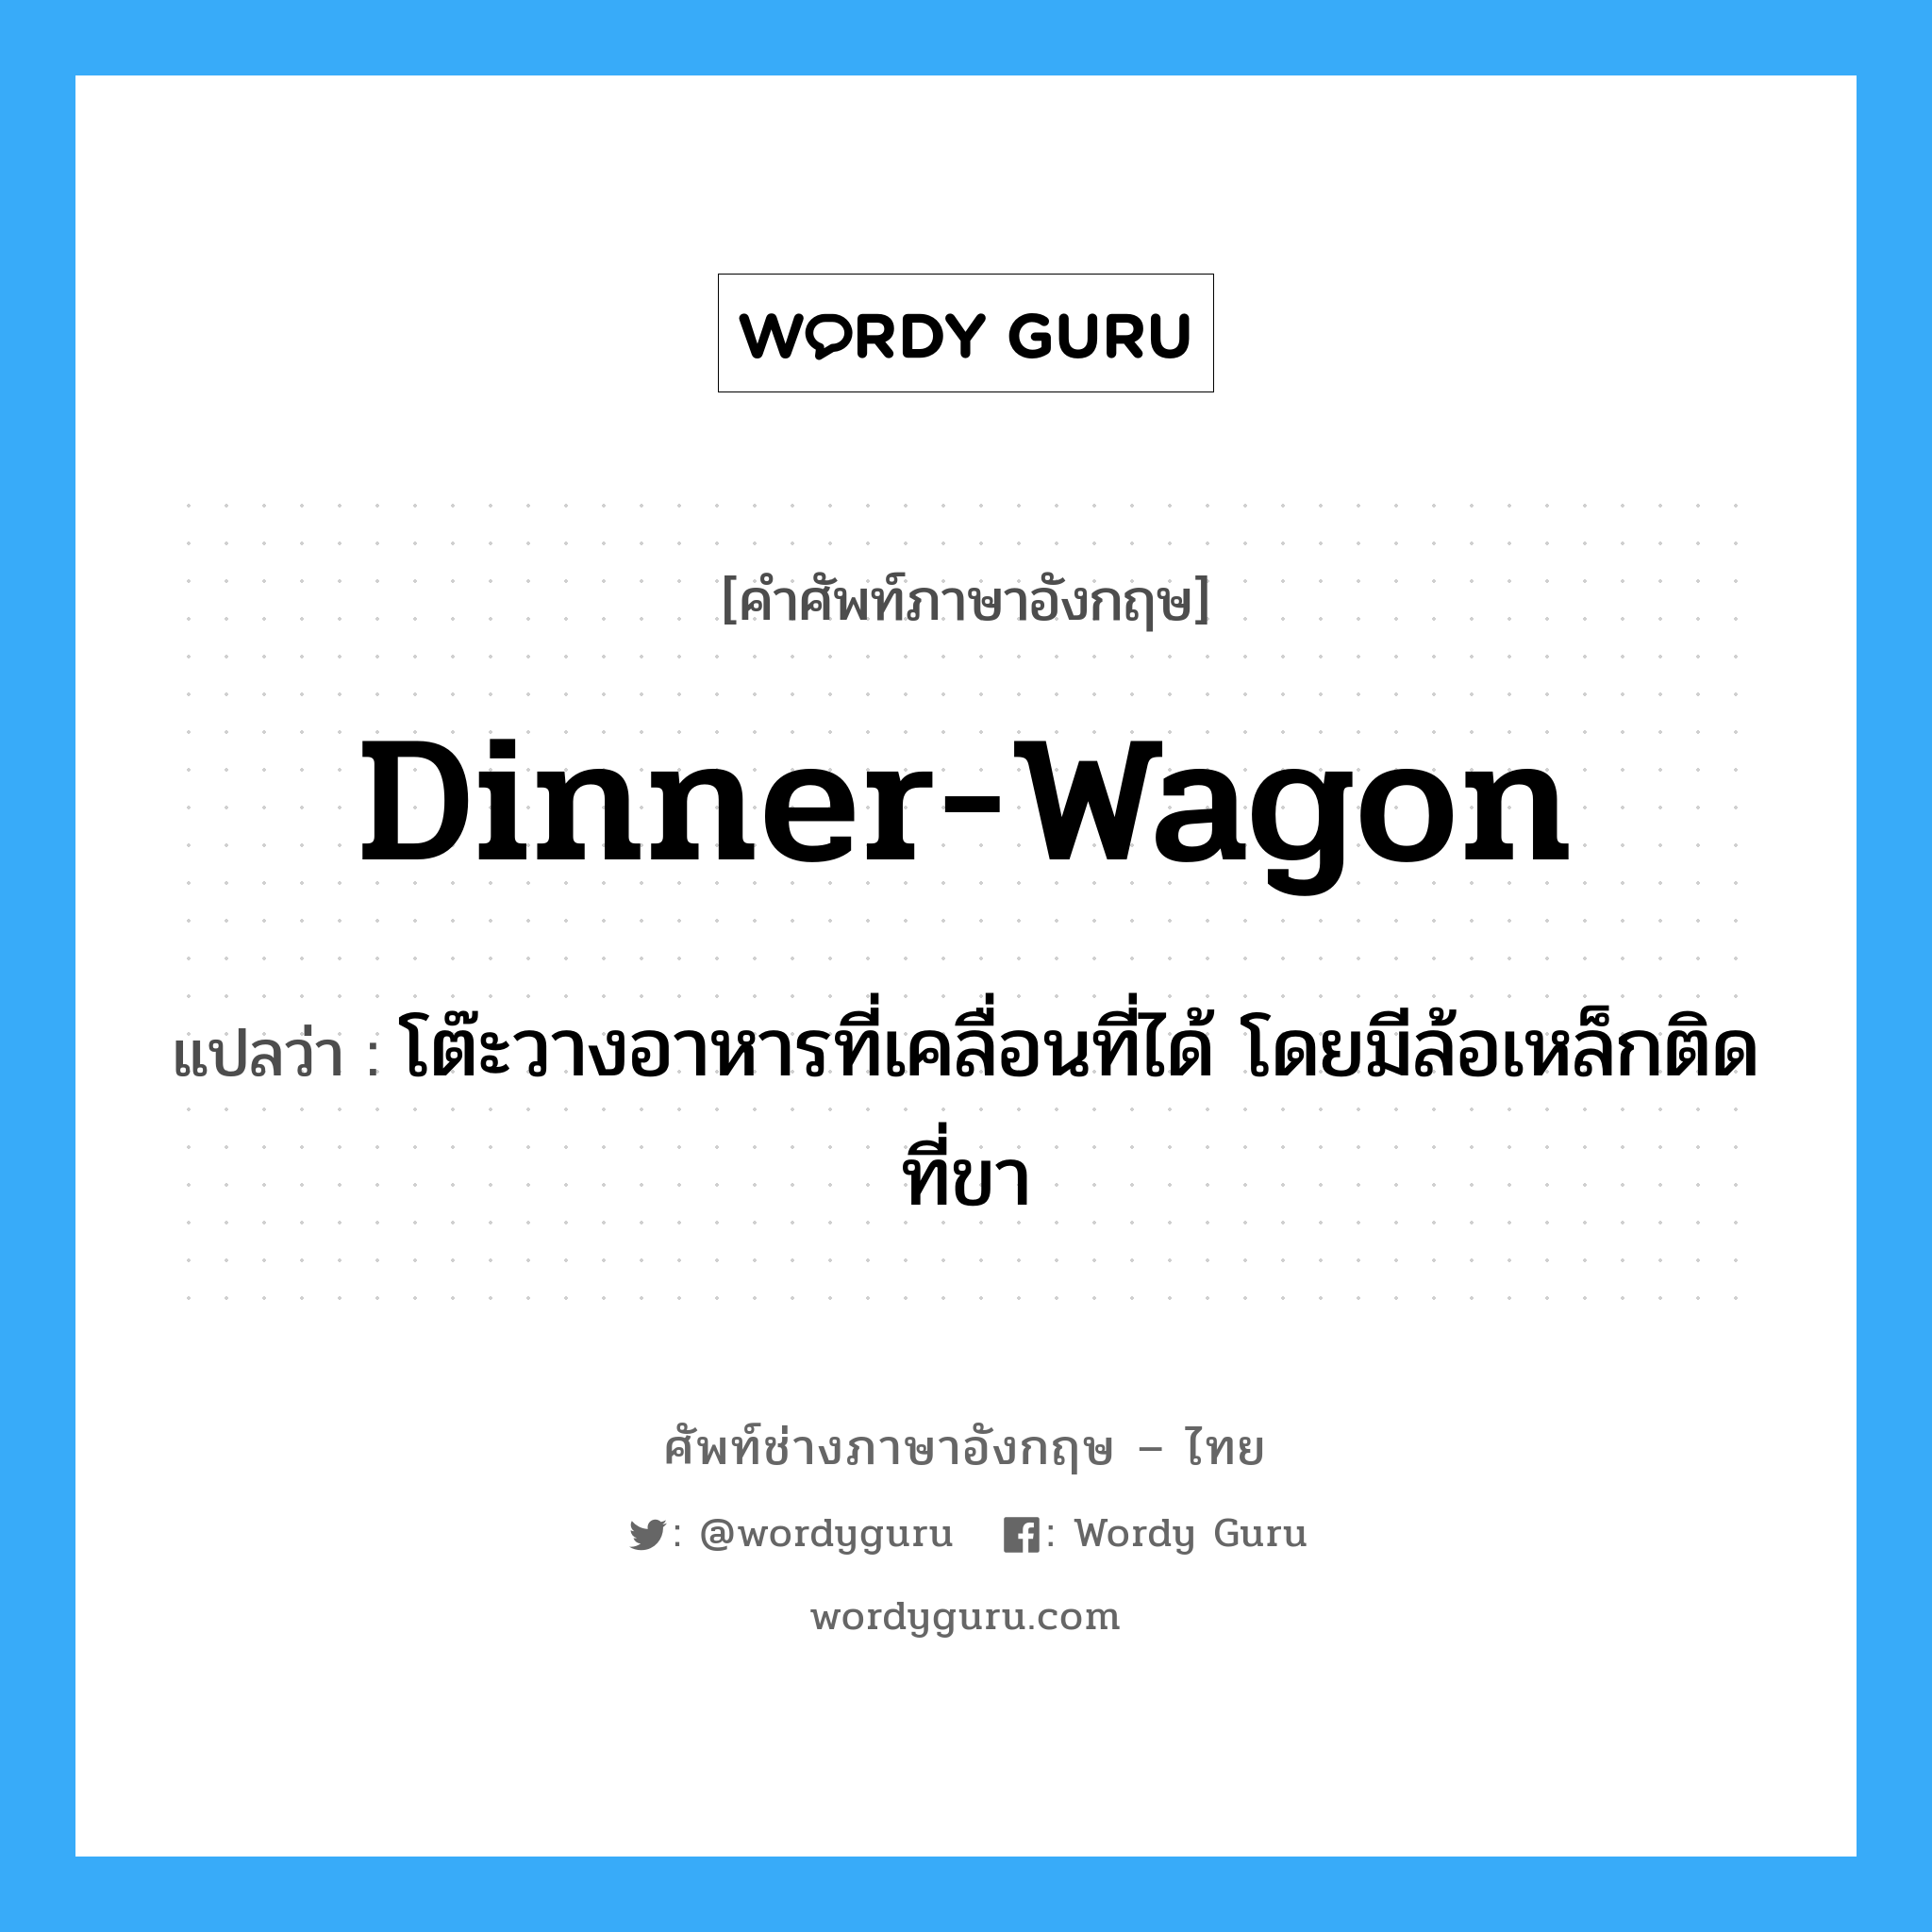 dinner-wagon แปลว่า?, คำศัพท์ช่างภาษาอังกฤษ - ไทย dinner-wagon คำศัพท์ภาษาอังกฤษ dinner-wagon แปลว่า โต๊ะวางอาหารที่เคลื่อนที่ได้ โดยมีล้อเหล็กติดที่ขา